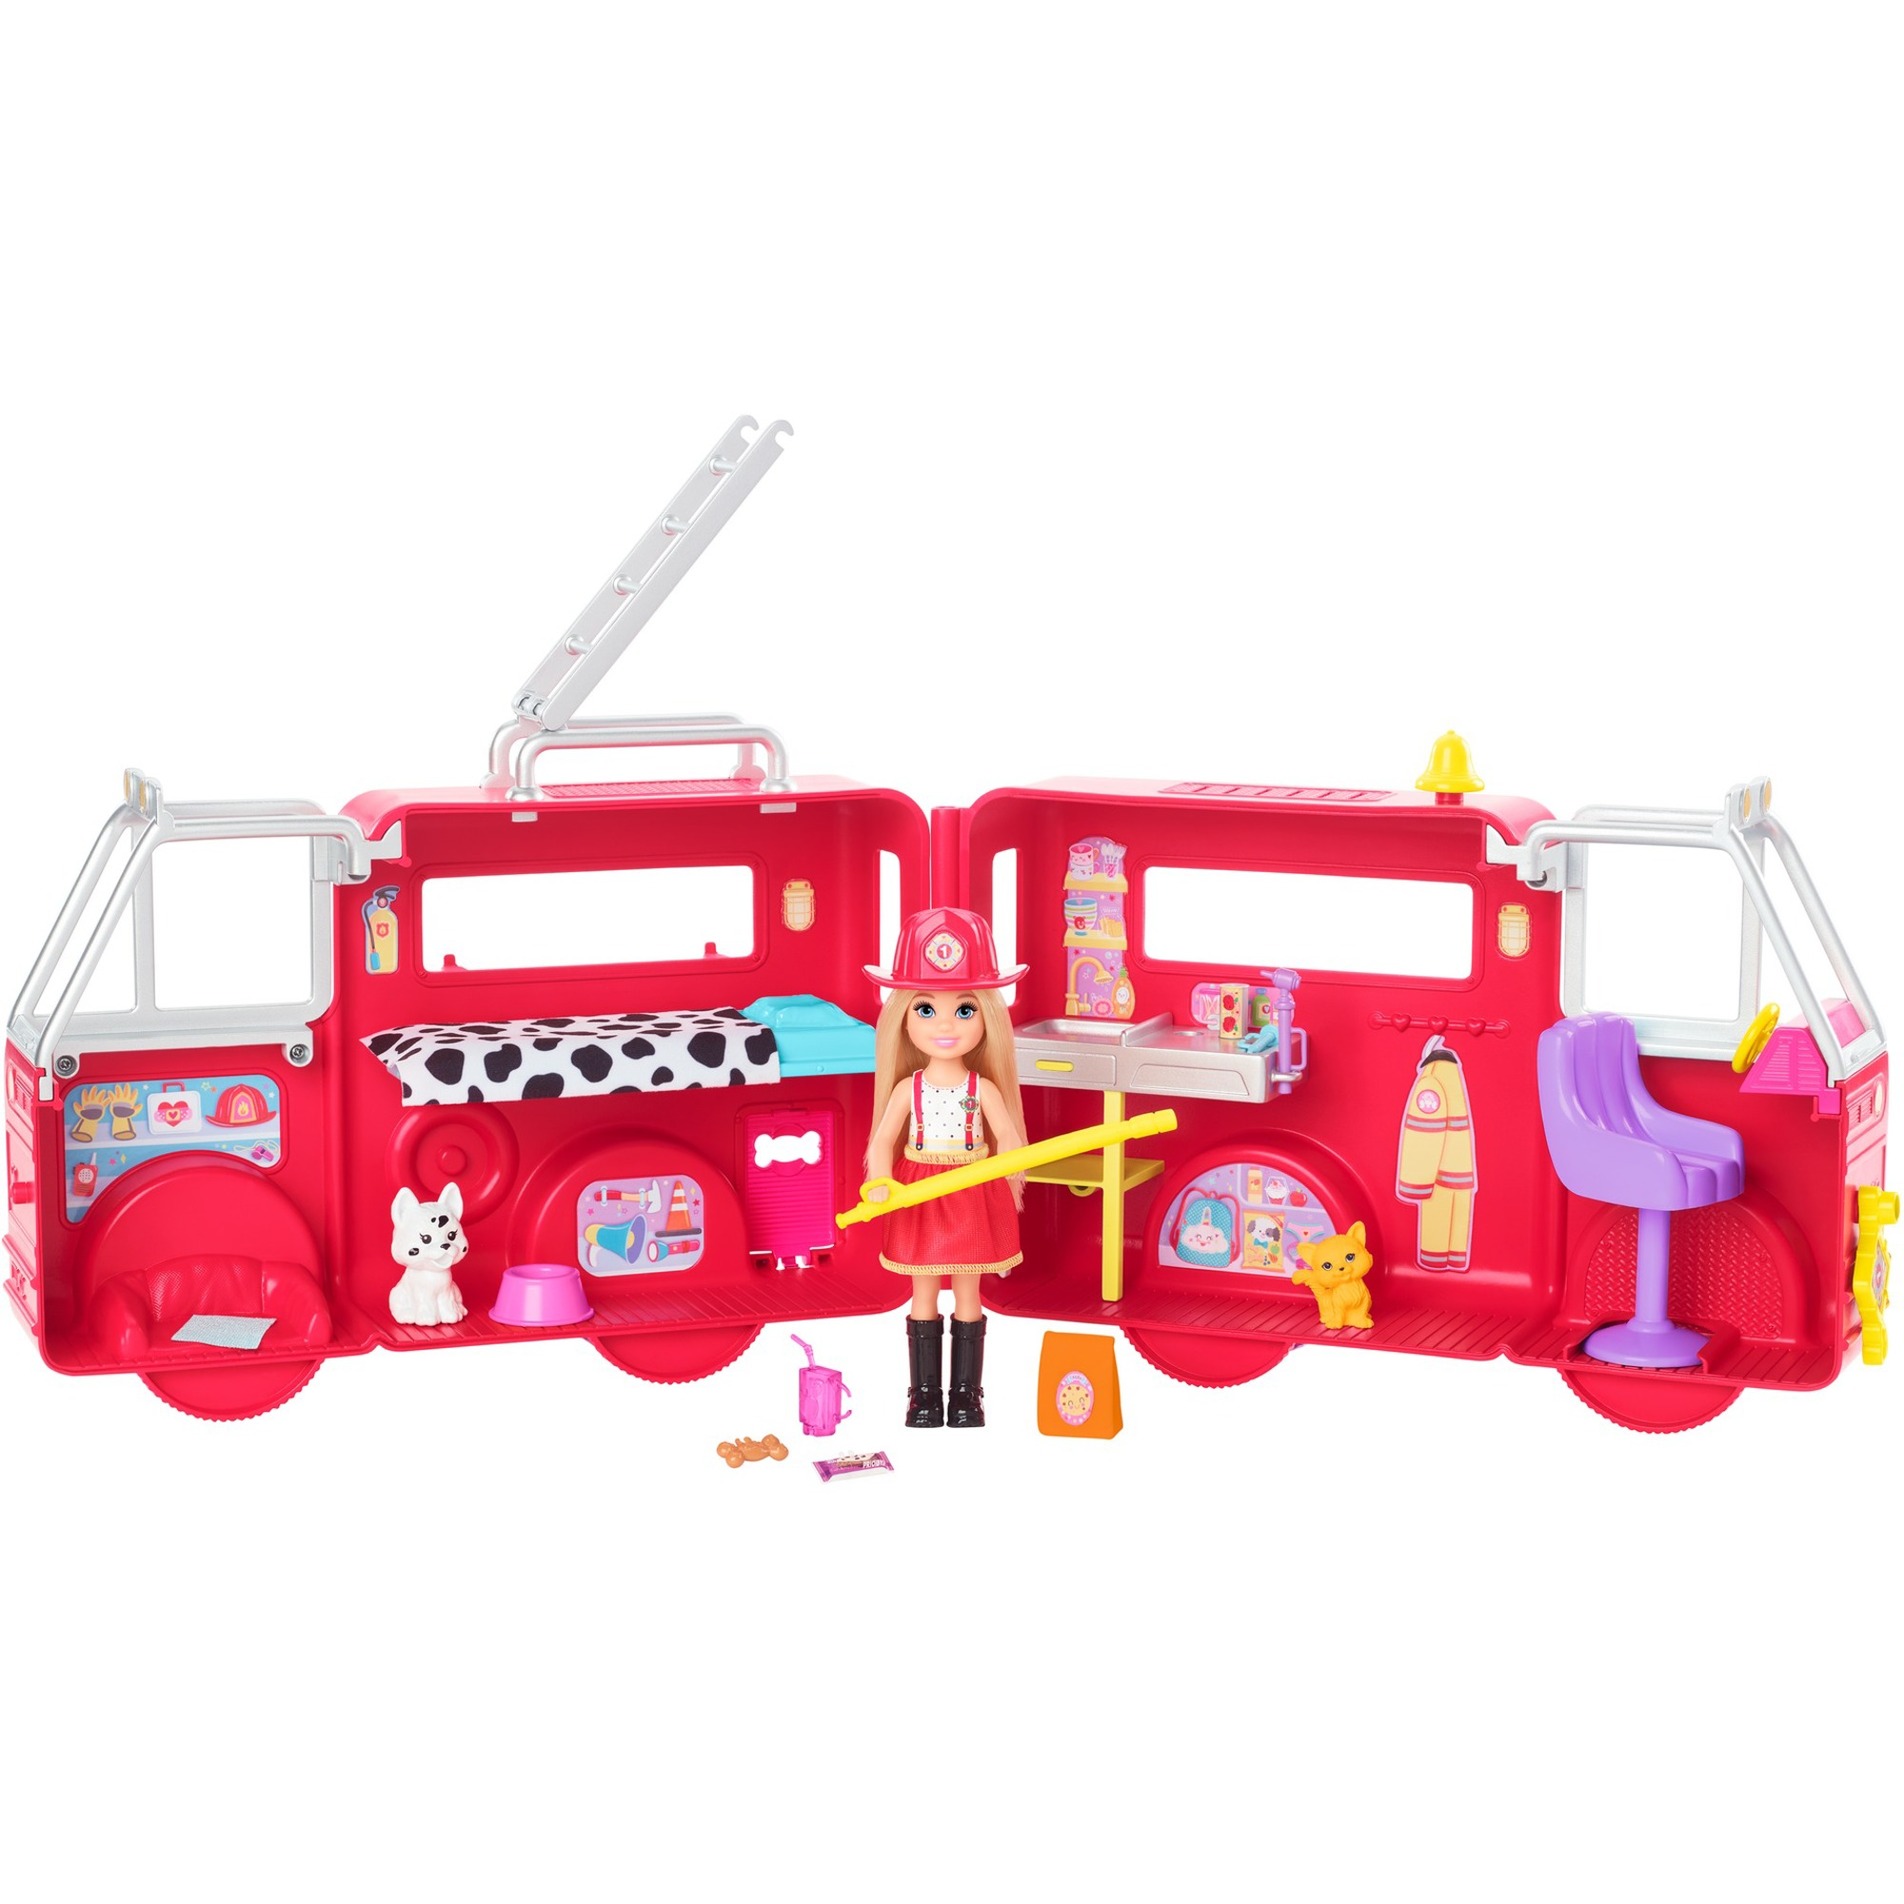 Image of Alternate - Barbie Chelsea Feuerwehrauto mit Chelsea Puppe online einkaufen bei Alternate